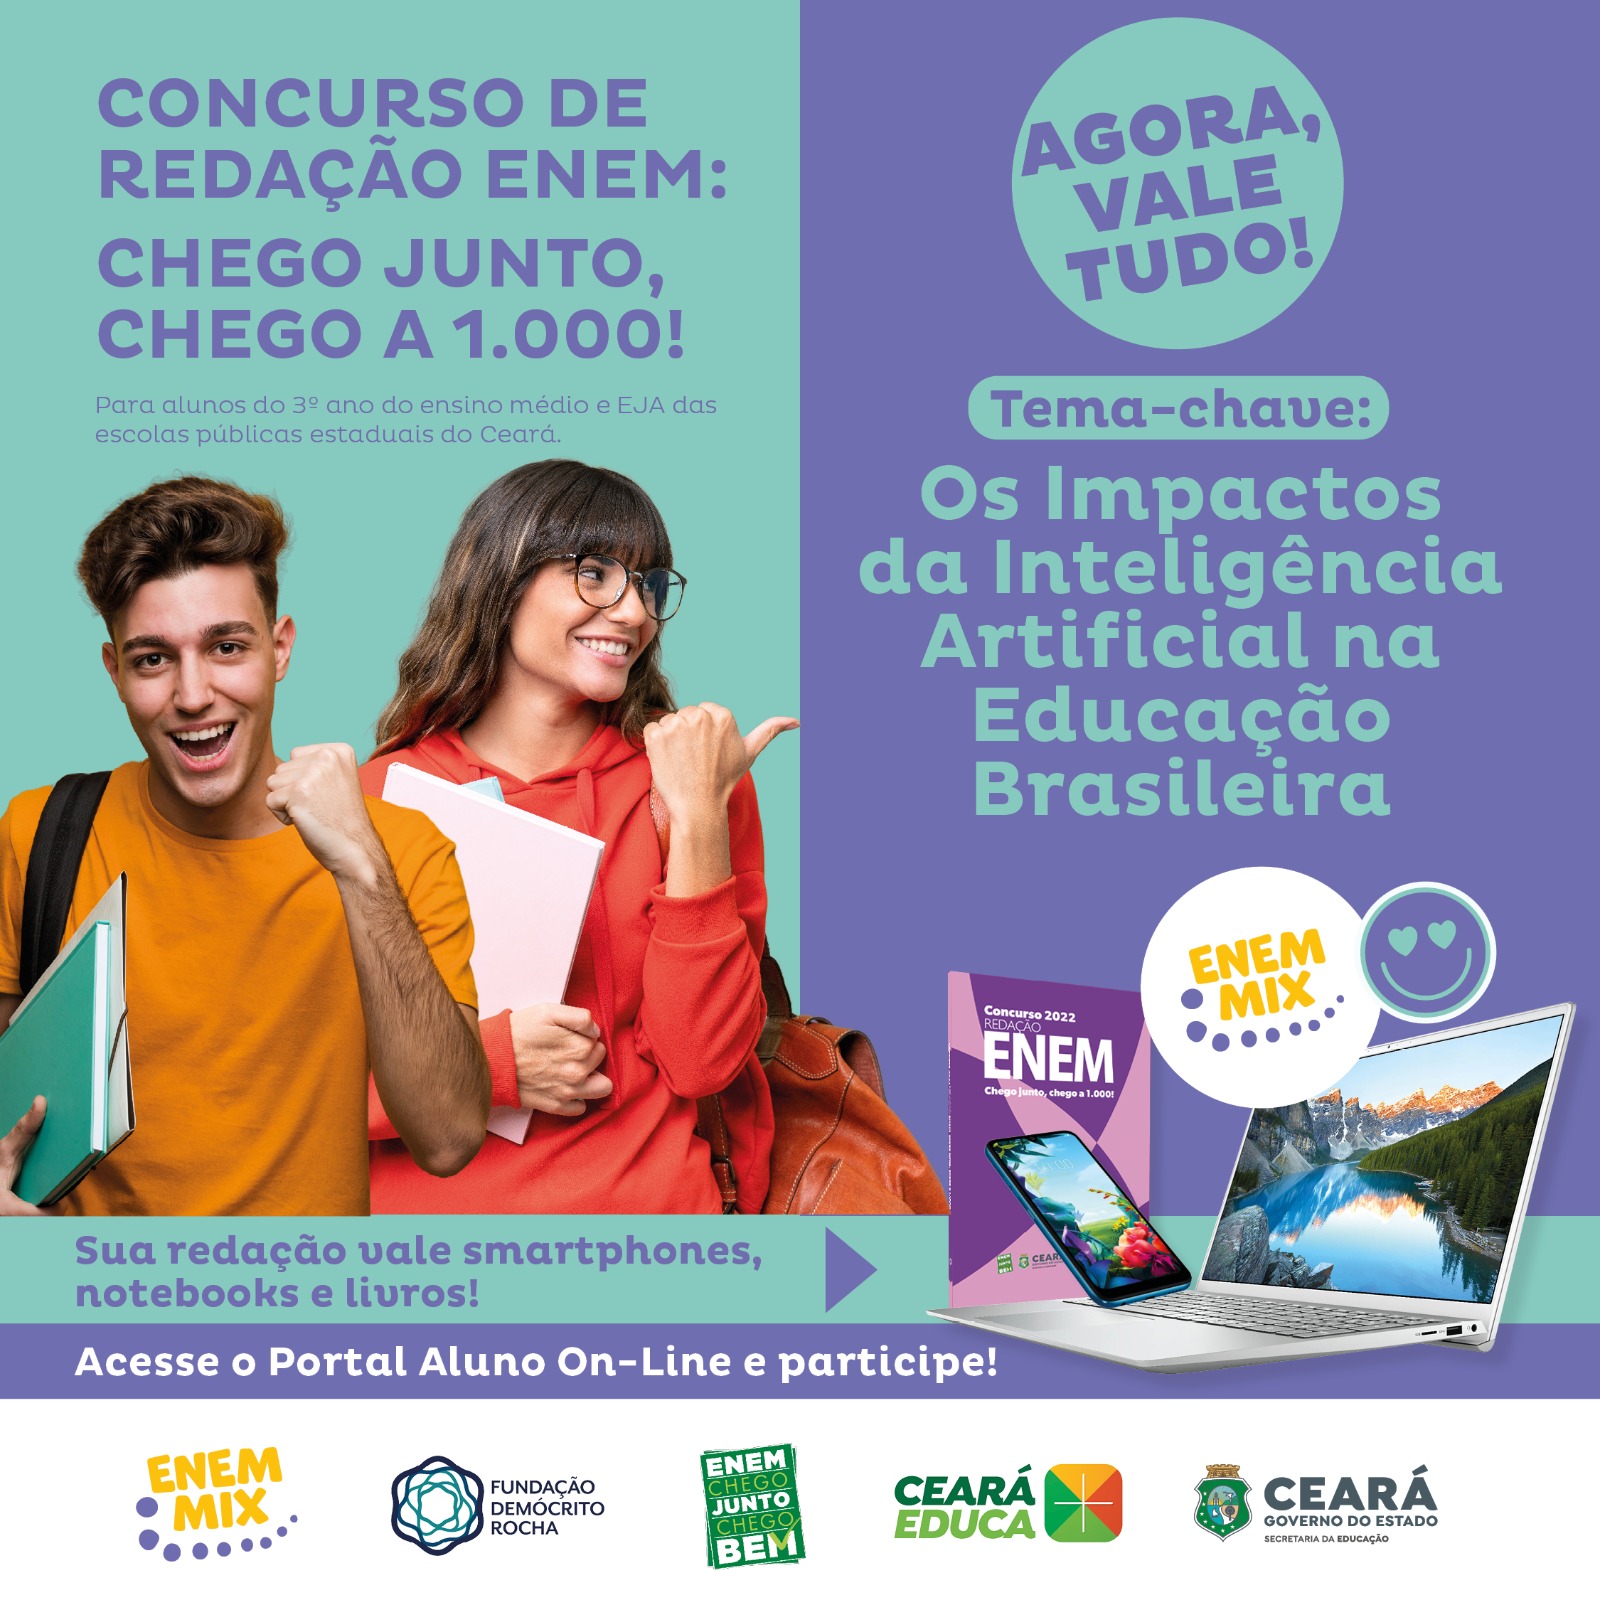 Sorteado o tema chave: Os Impactos da Inteligência Artificial na Educação Brasileira